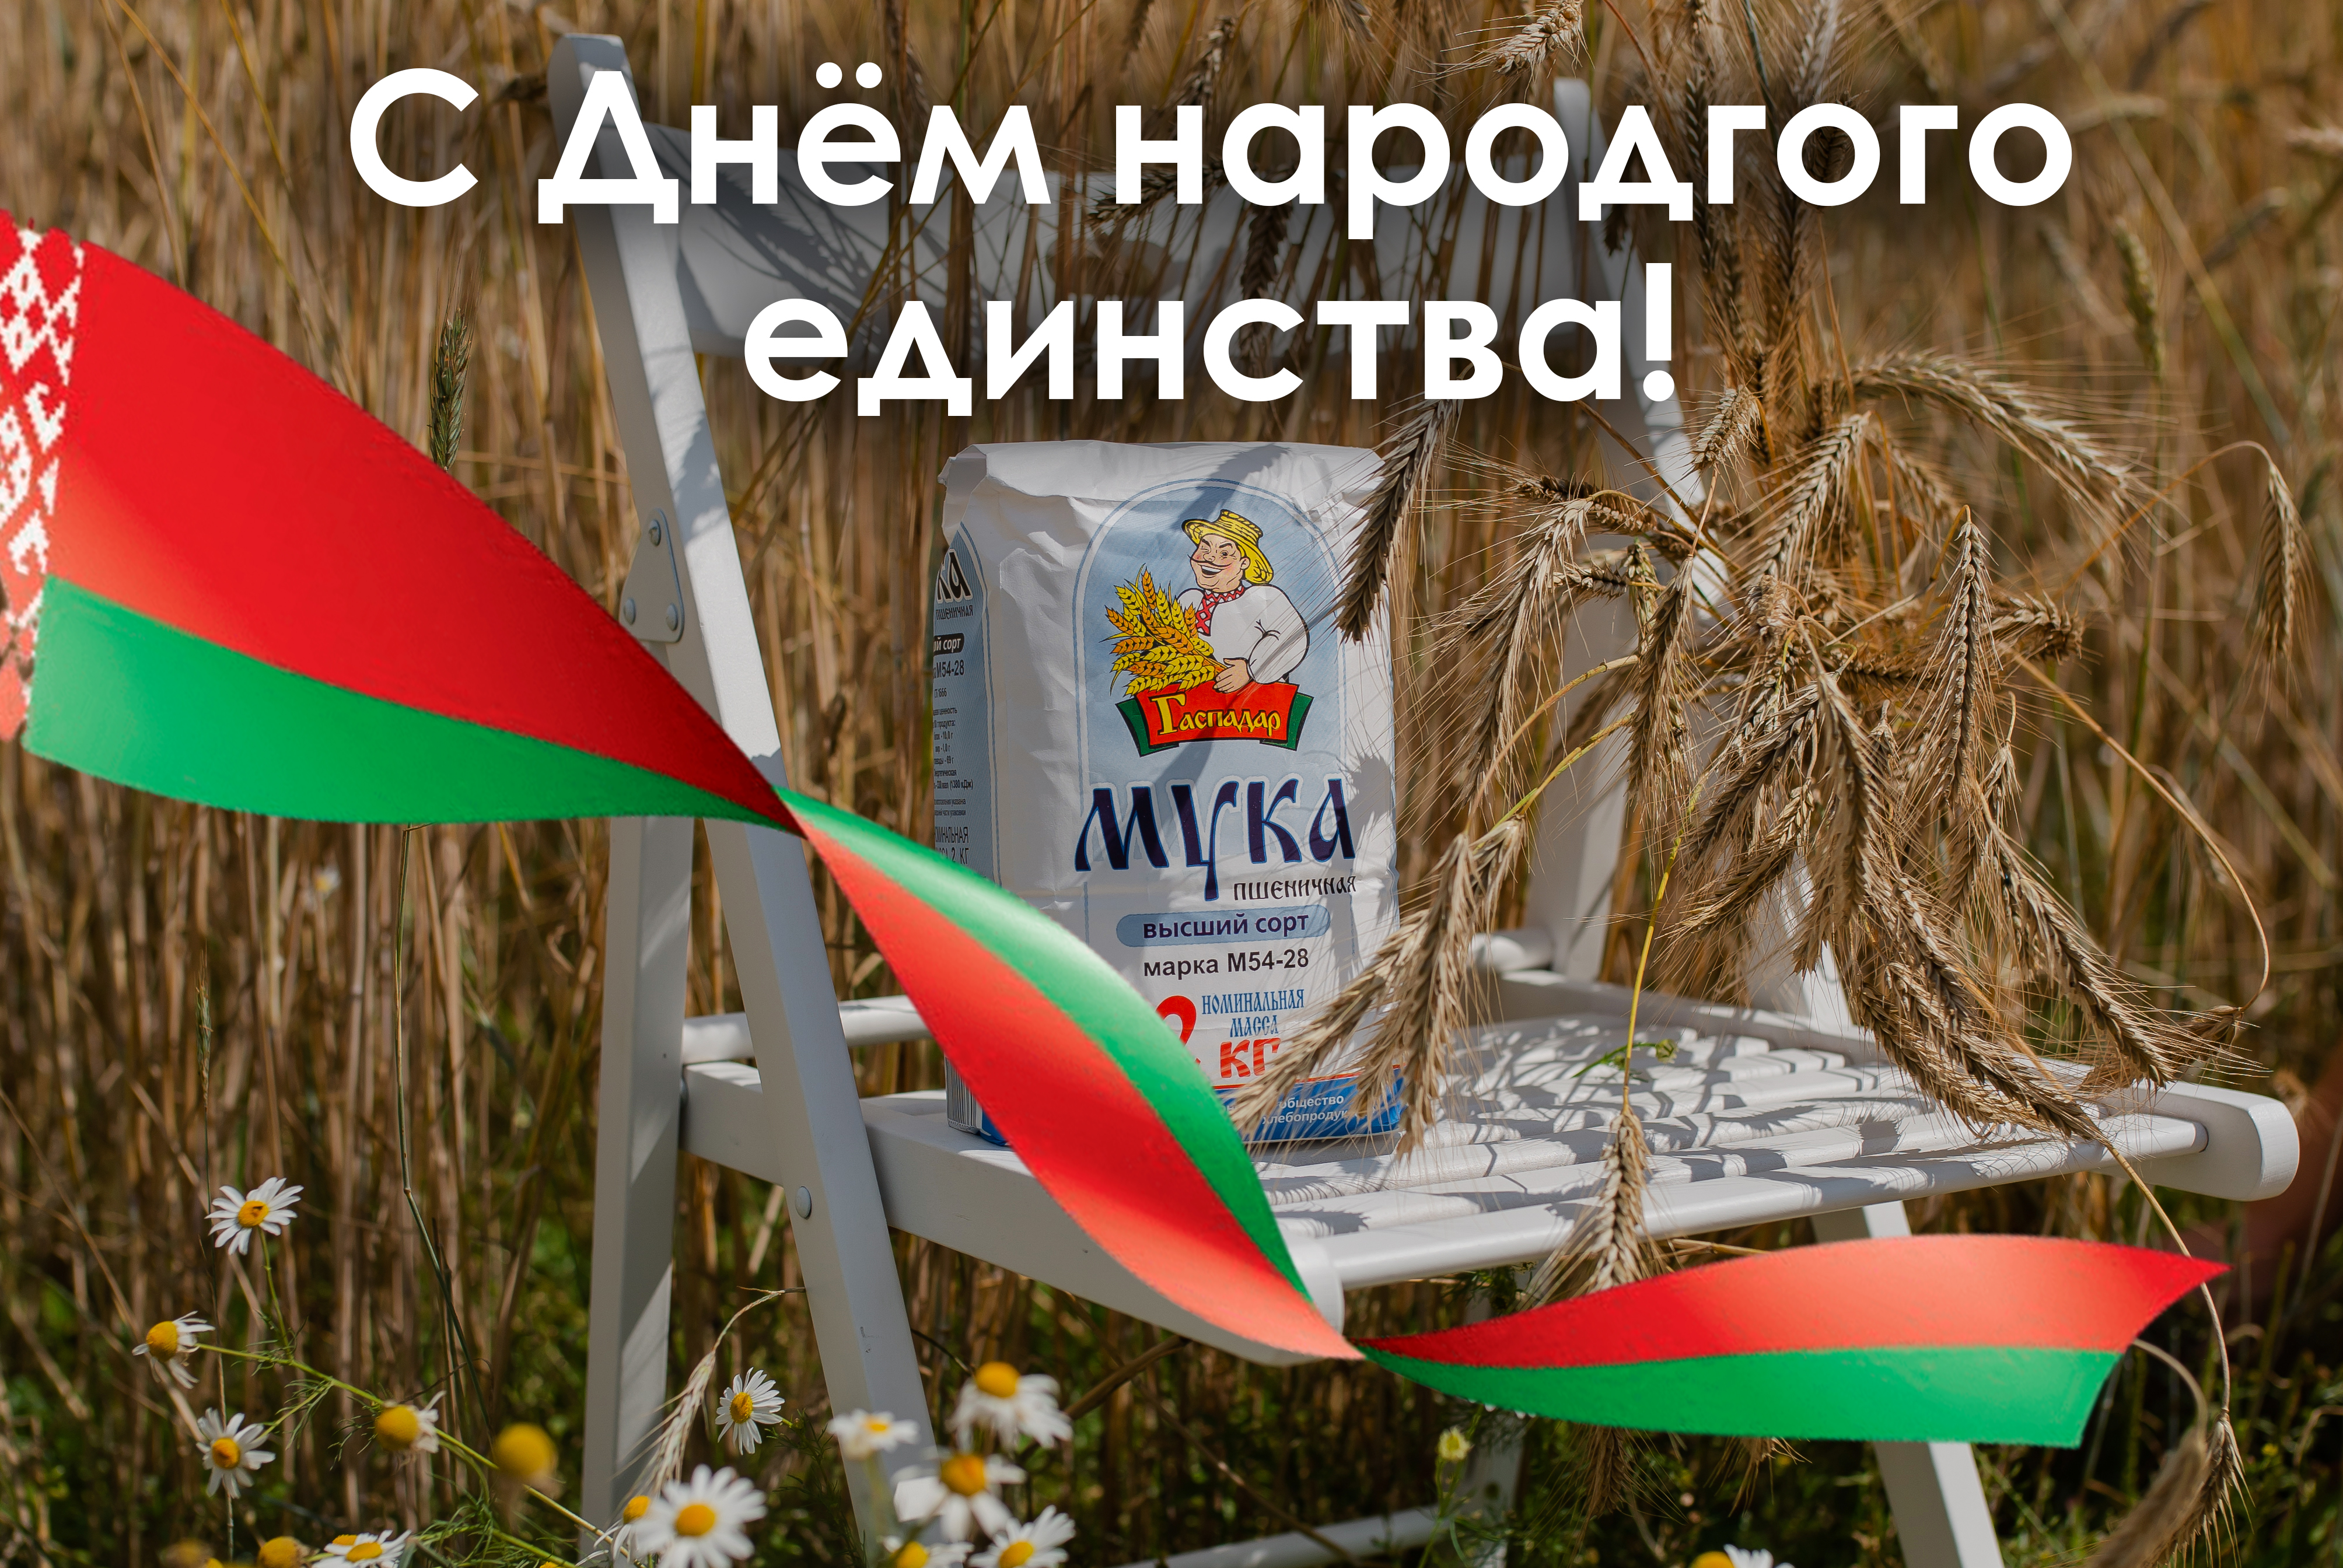 ОАО "Барановичхлебопродукт" поздравляет всех белорусов с Днём народного единства